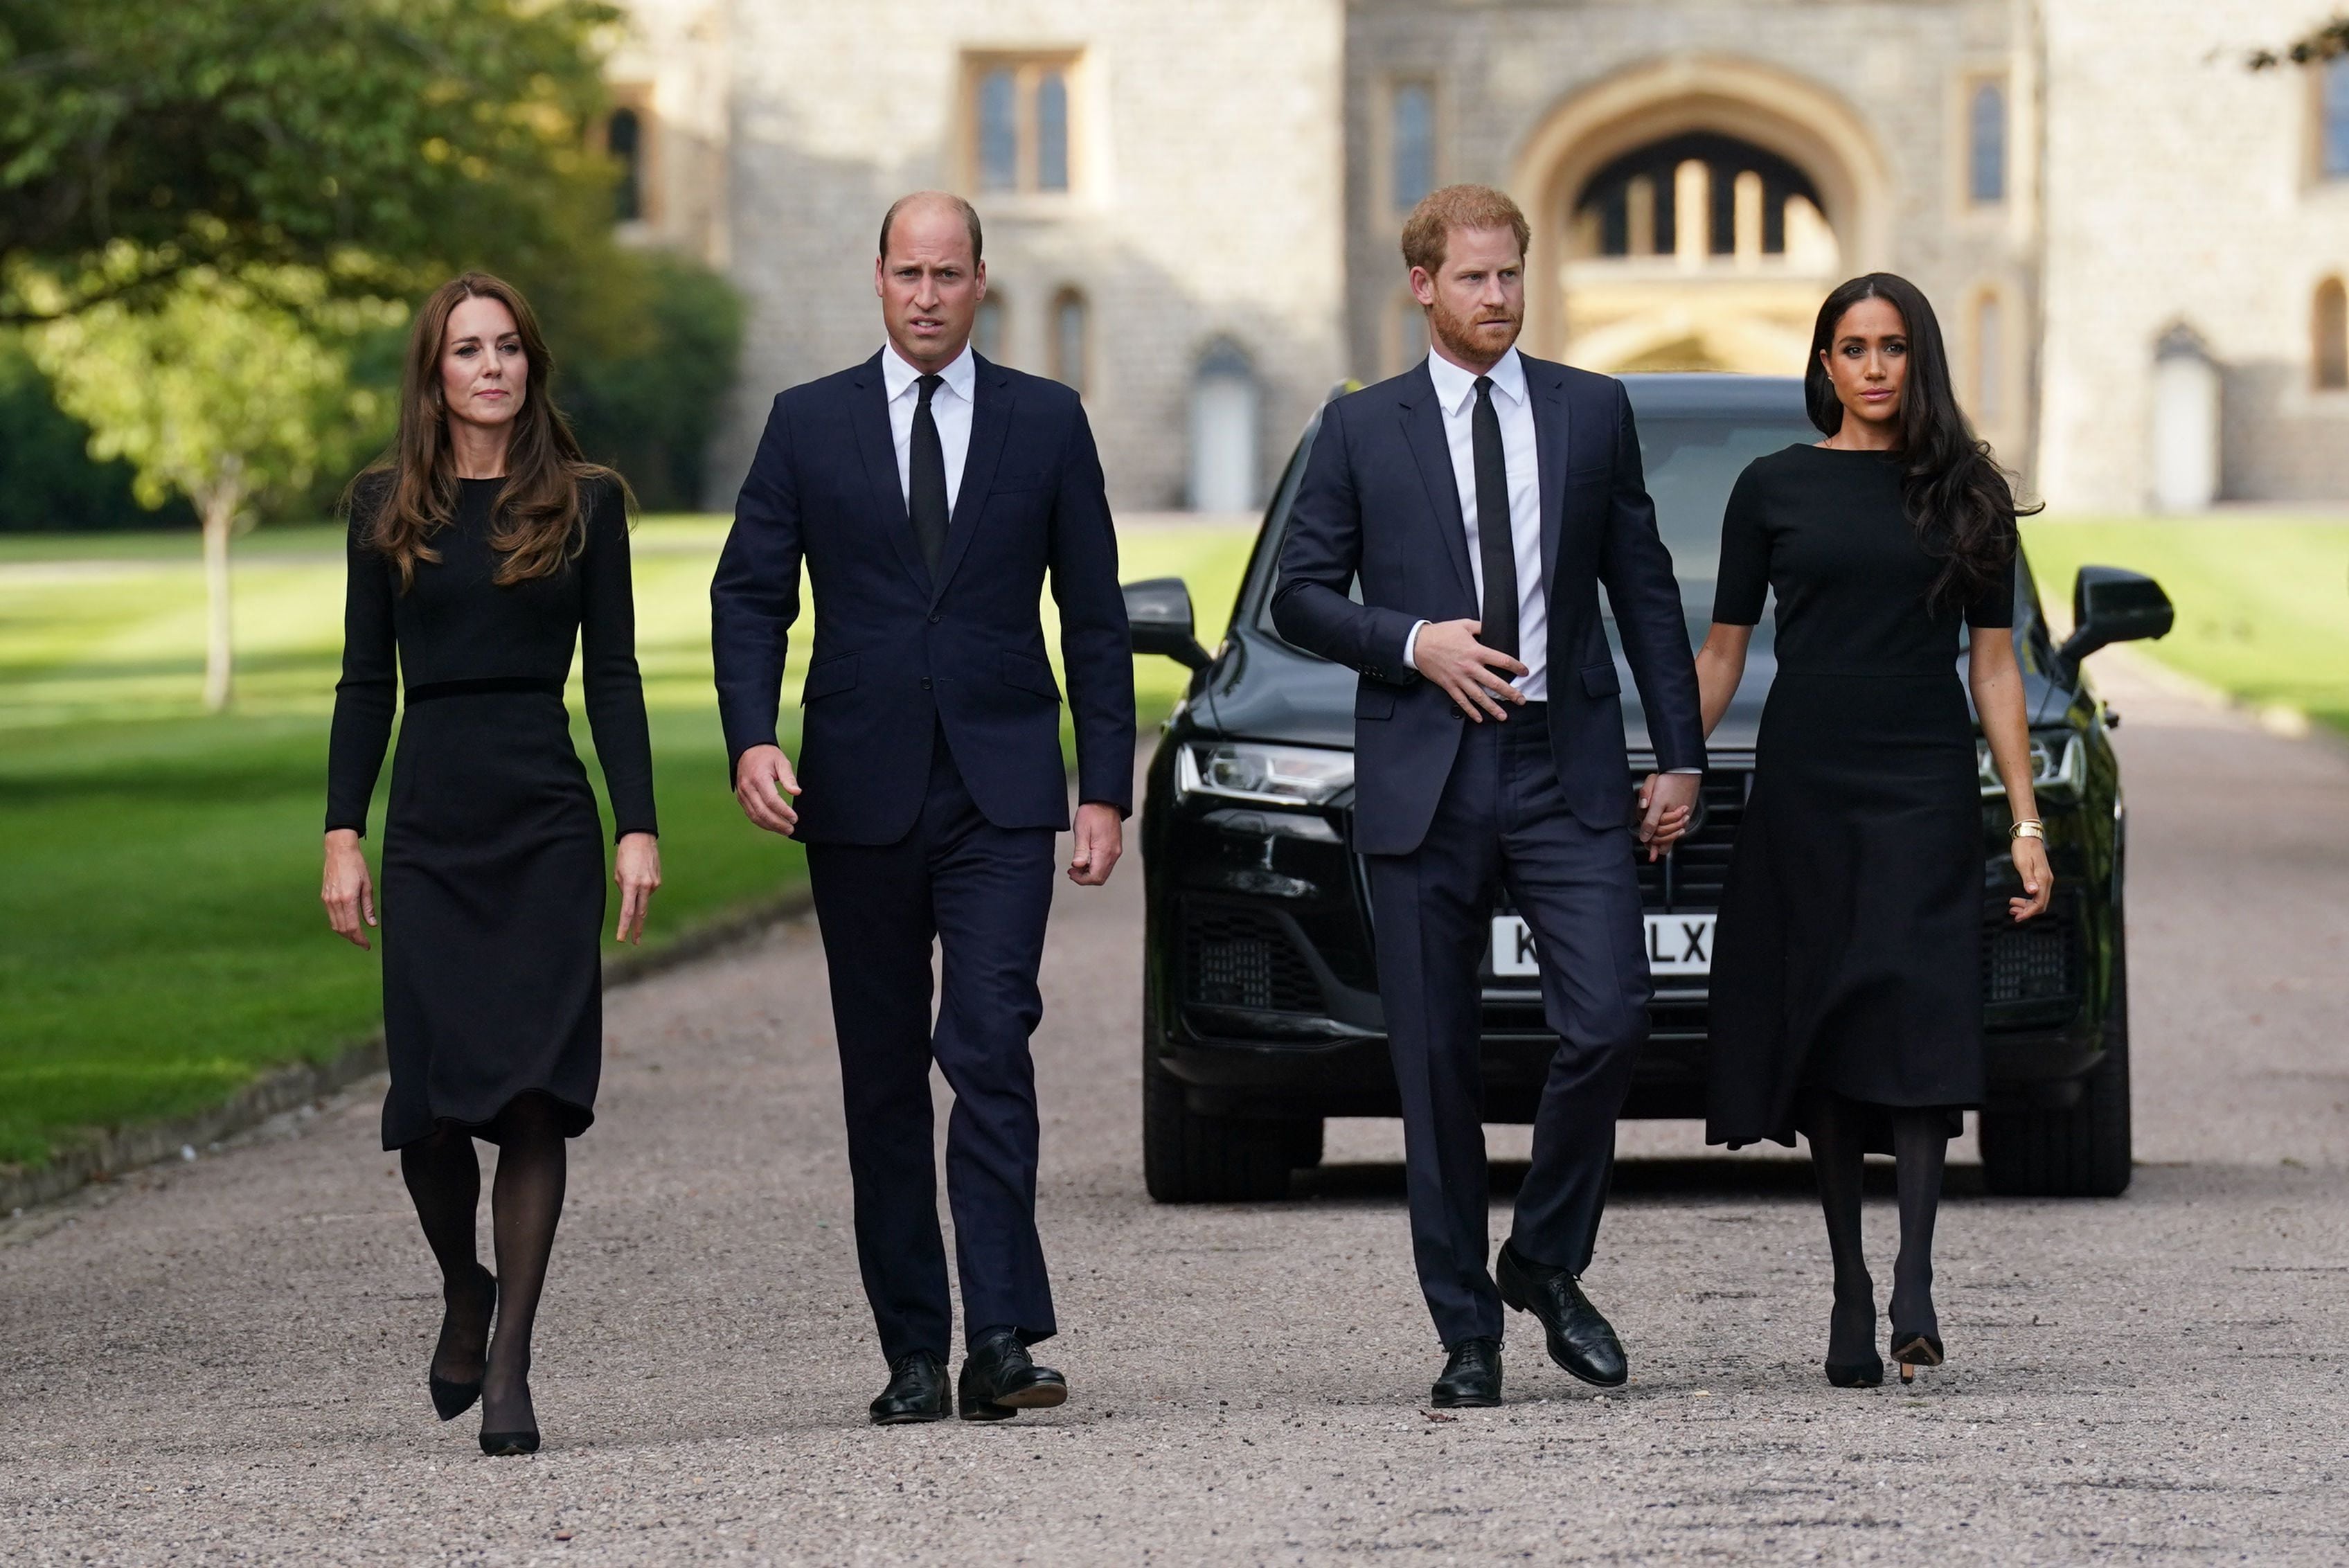 Los príncipes de Gales Catalina y Guillermo, hicieron una caminata con los duques de Sussex, el príncipe Enrique y su esposa Meghan Markle, para visitar el castillo de Windsor este sábado 10 de noviembre.